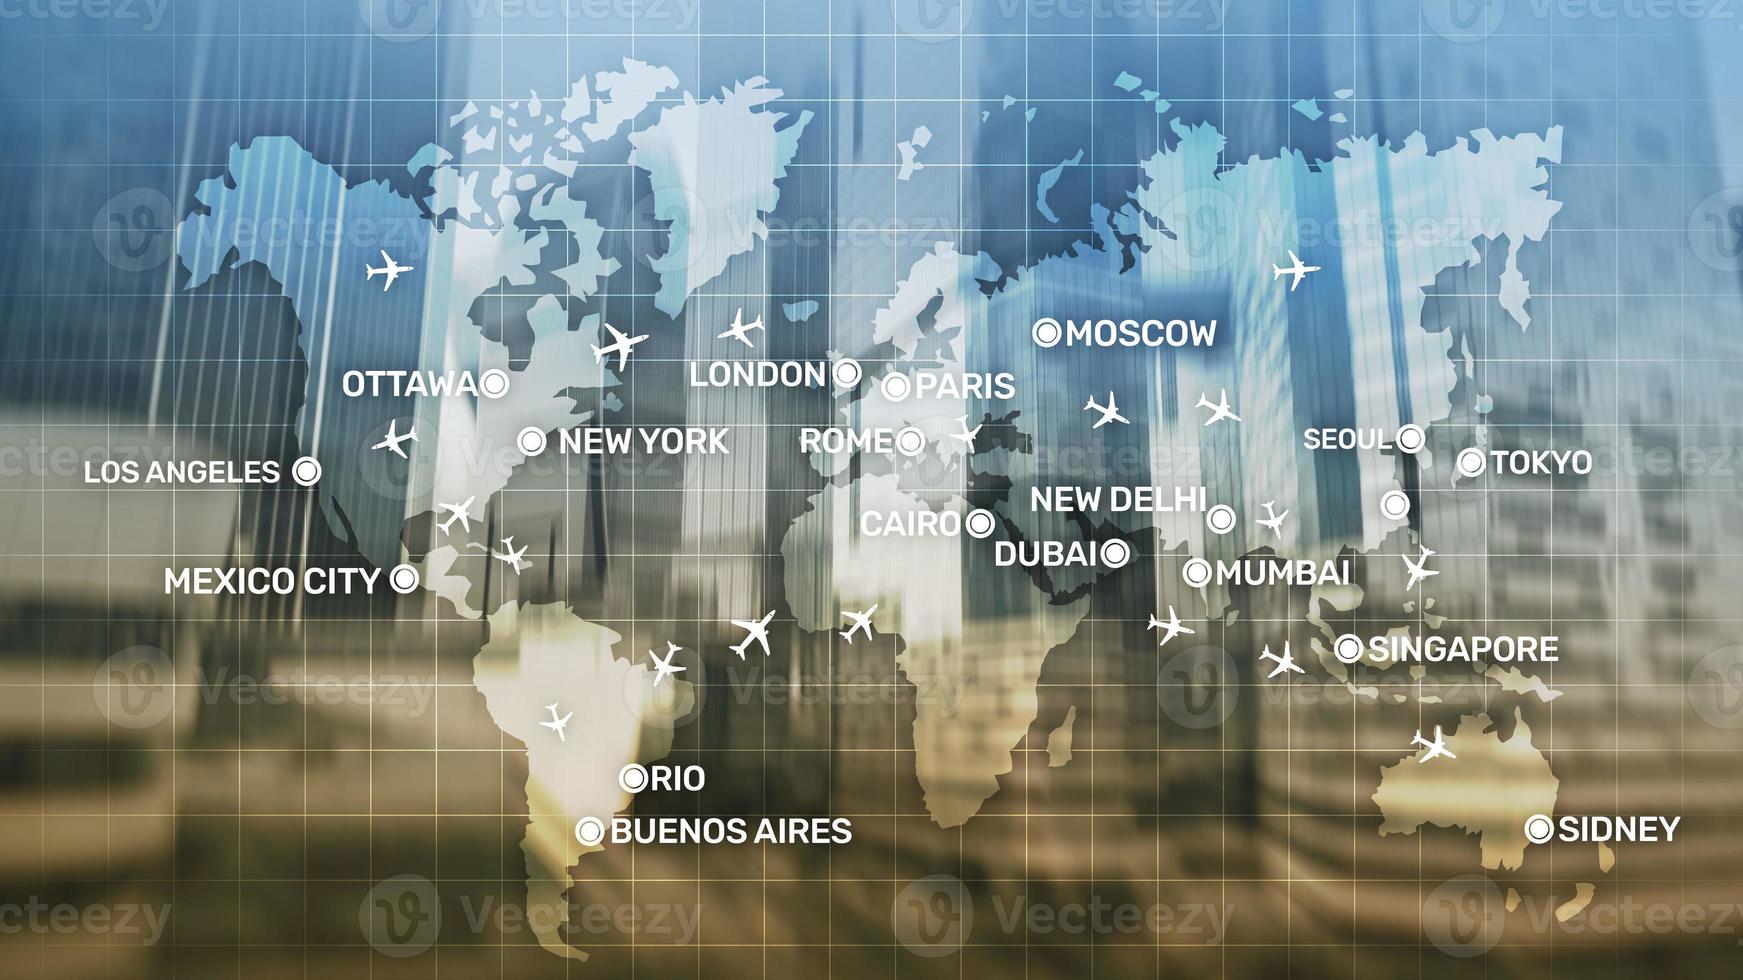 abstrato de aviação global com aviões e nomes de cidades em um mapa. conceito de transporte de viagens de negócios foto